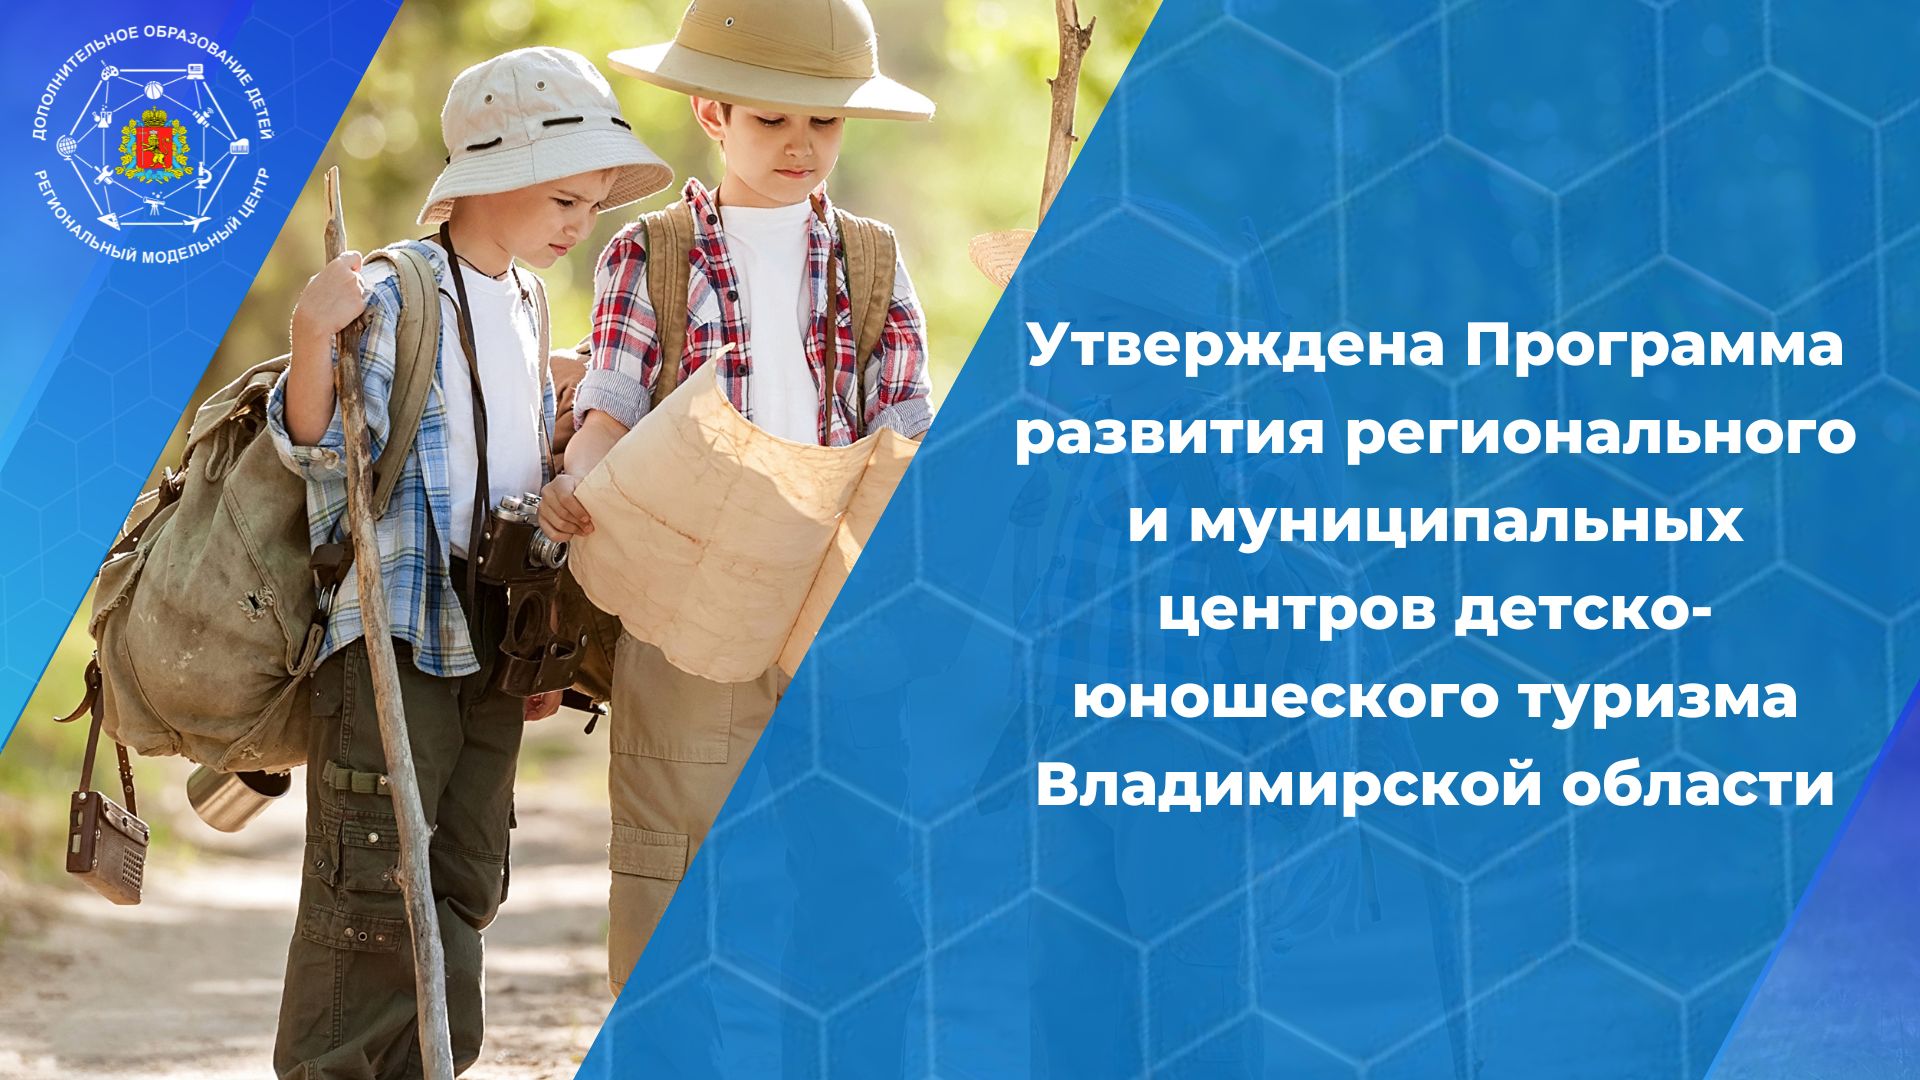 Утверждена программа развития регионального и муниципальных центров детско-юношеского туризма Владимирской области до 2030 года.